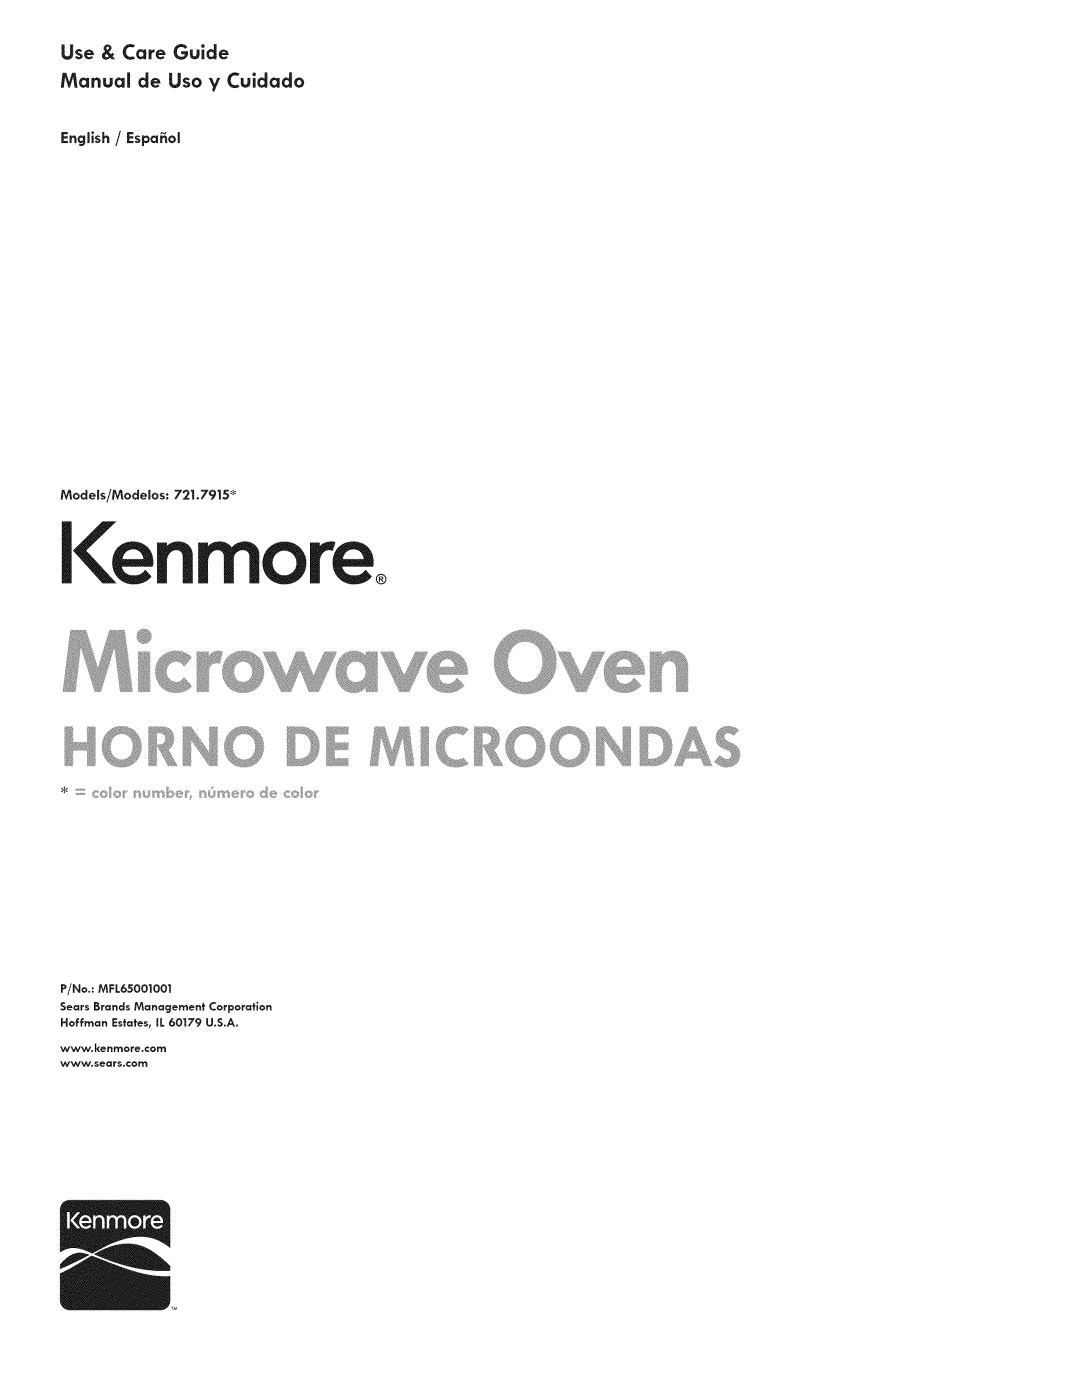 Kenmore 721.7915 manual I enmore, Hor De, English / Espafiol, Models/Moclelos 